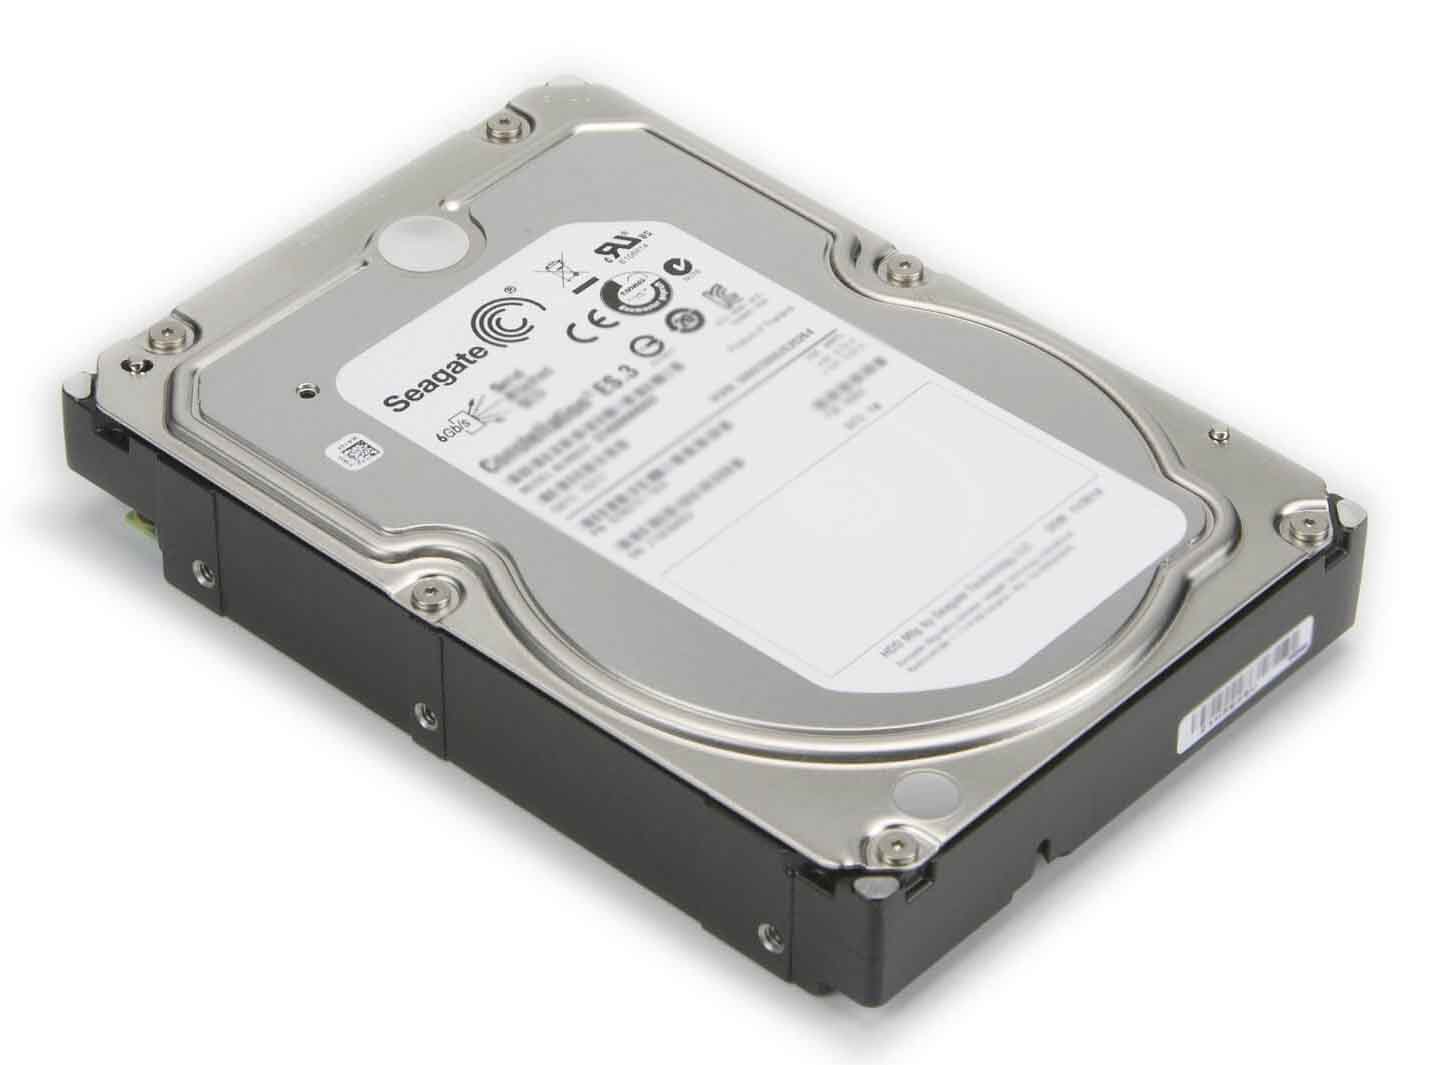 Seagate ST1800MM0198 1.8TB 10K RPM SAS 12GBPS 128MB Buffer Hard Drive |  Refurbished | Dell OEM